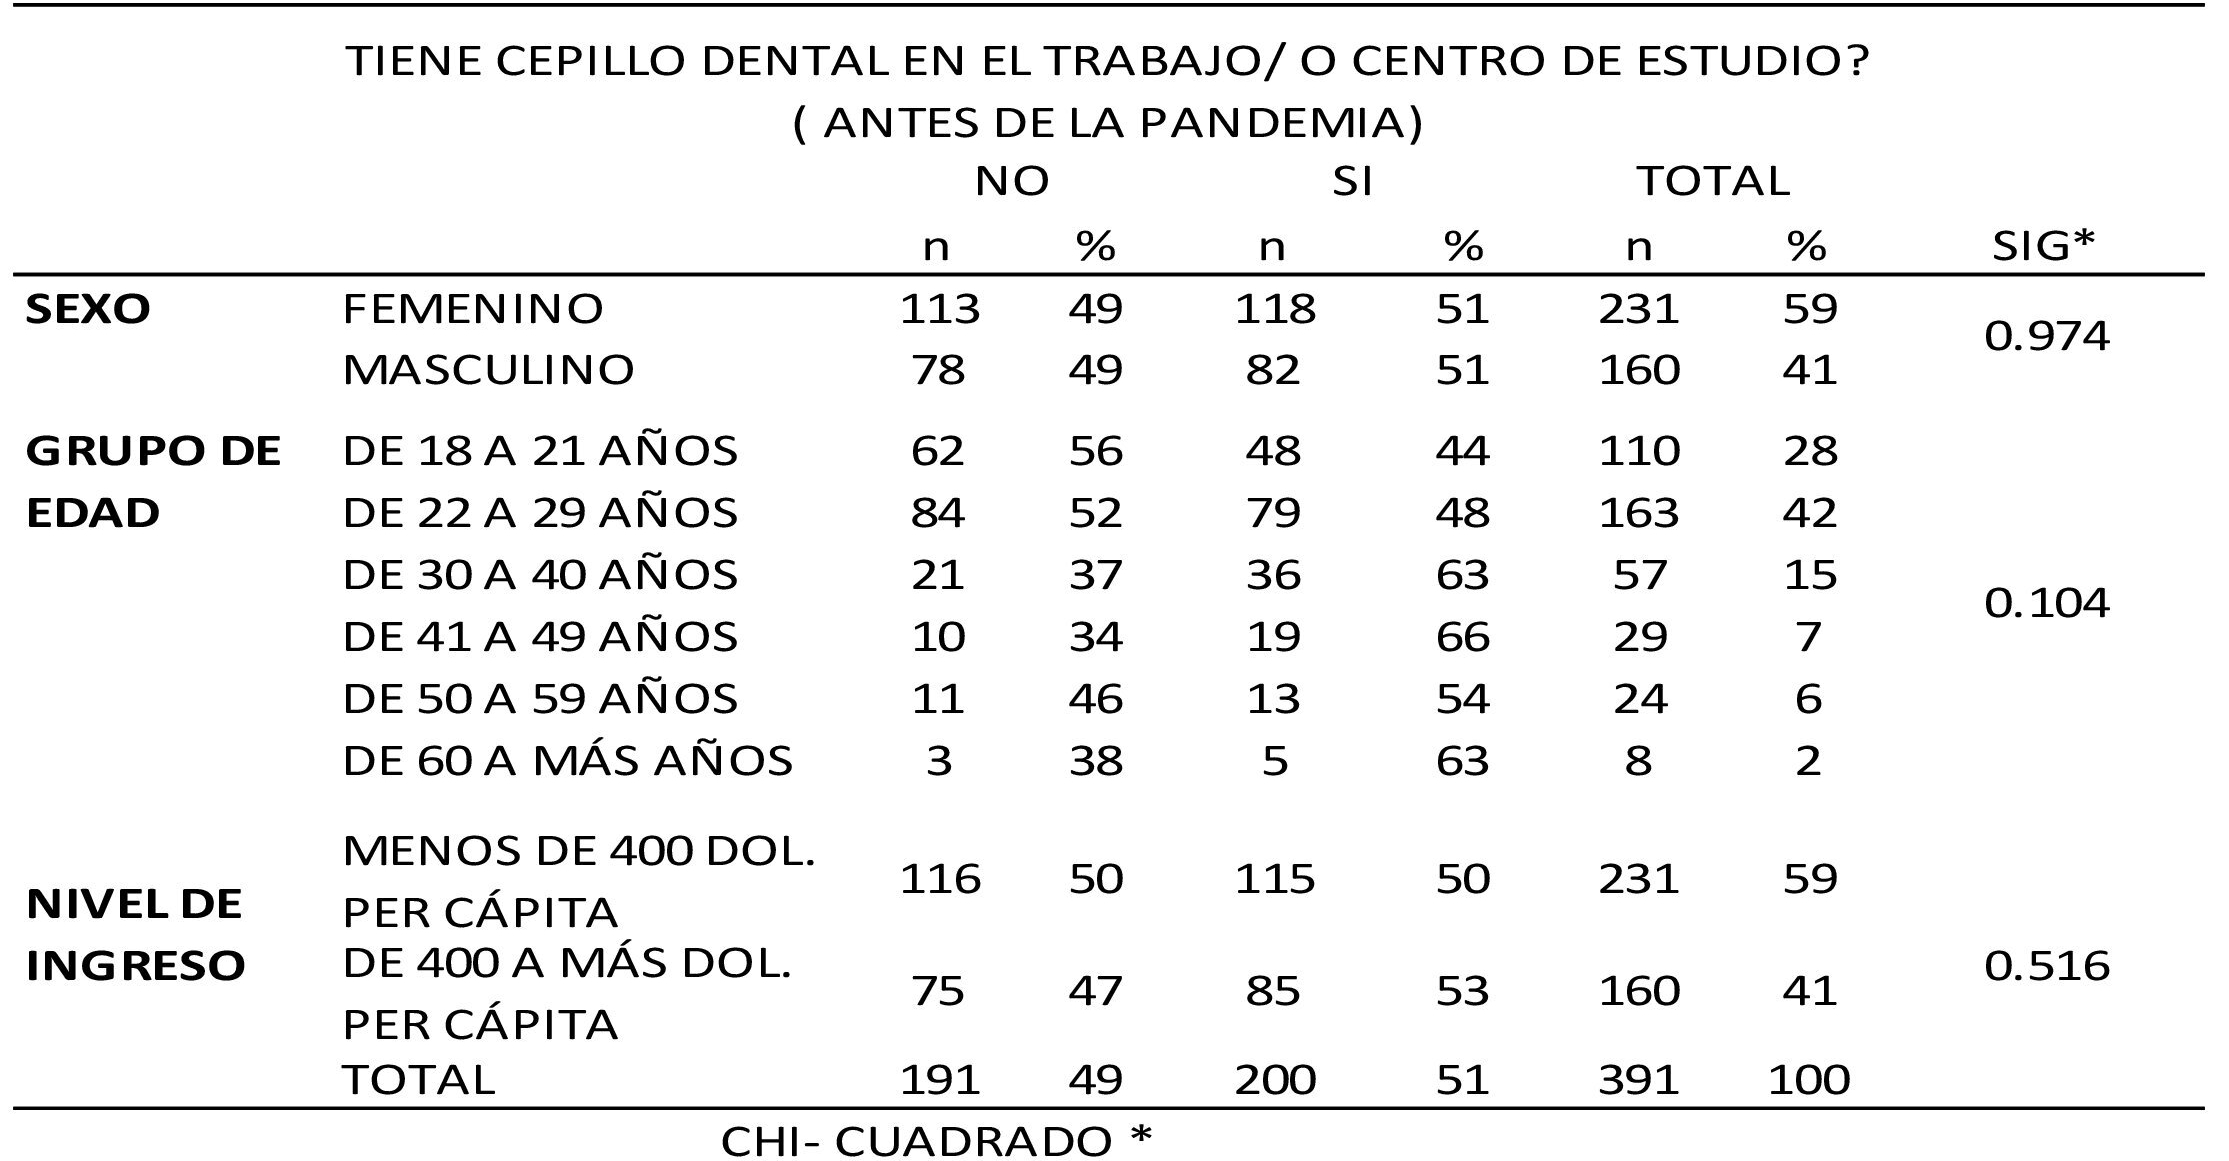  frecuencia
de cepillo dental en el trabajo según sexo, edad, nivel de ingreso